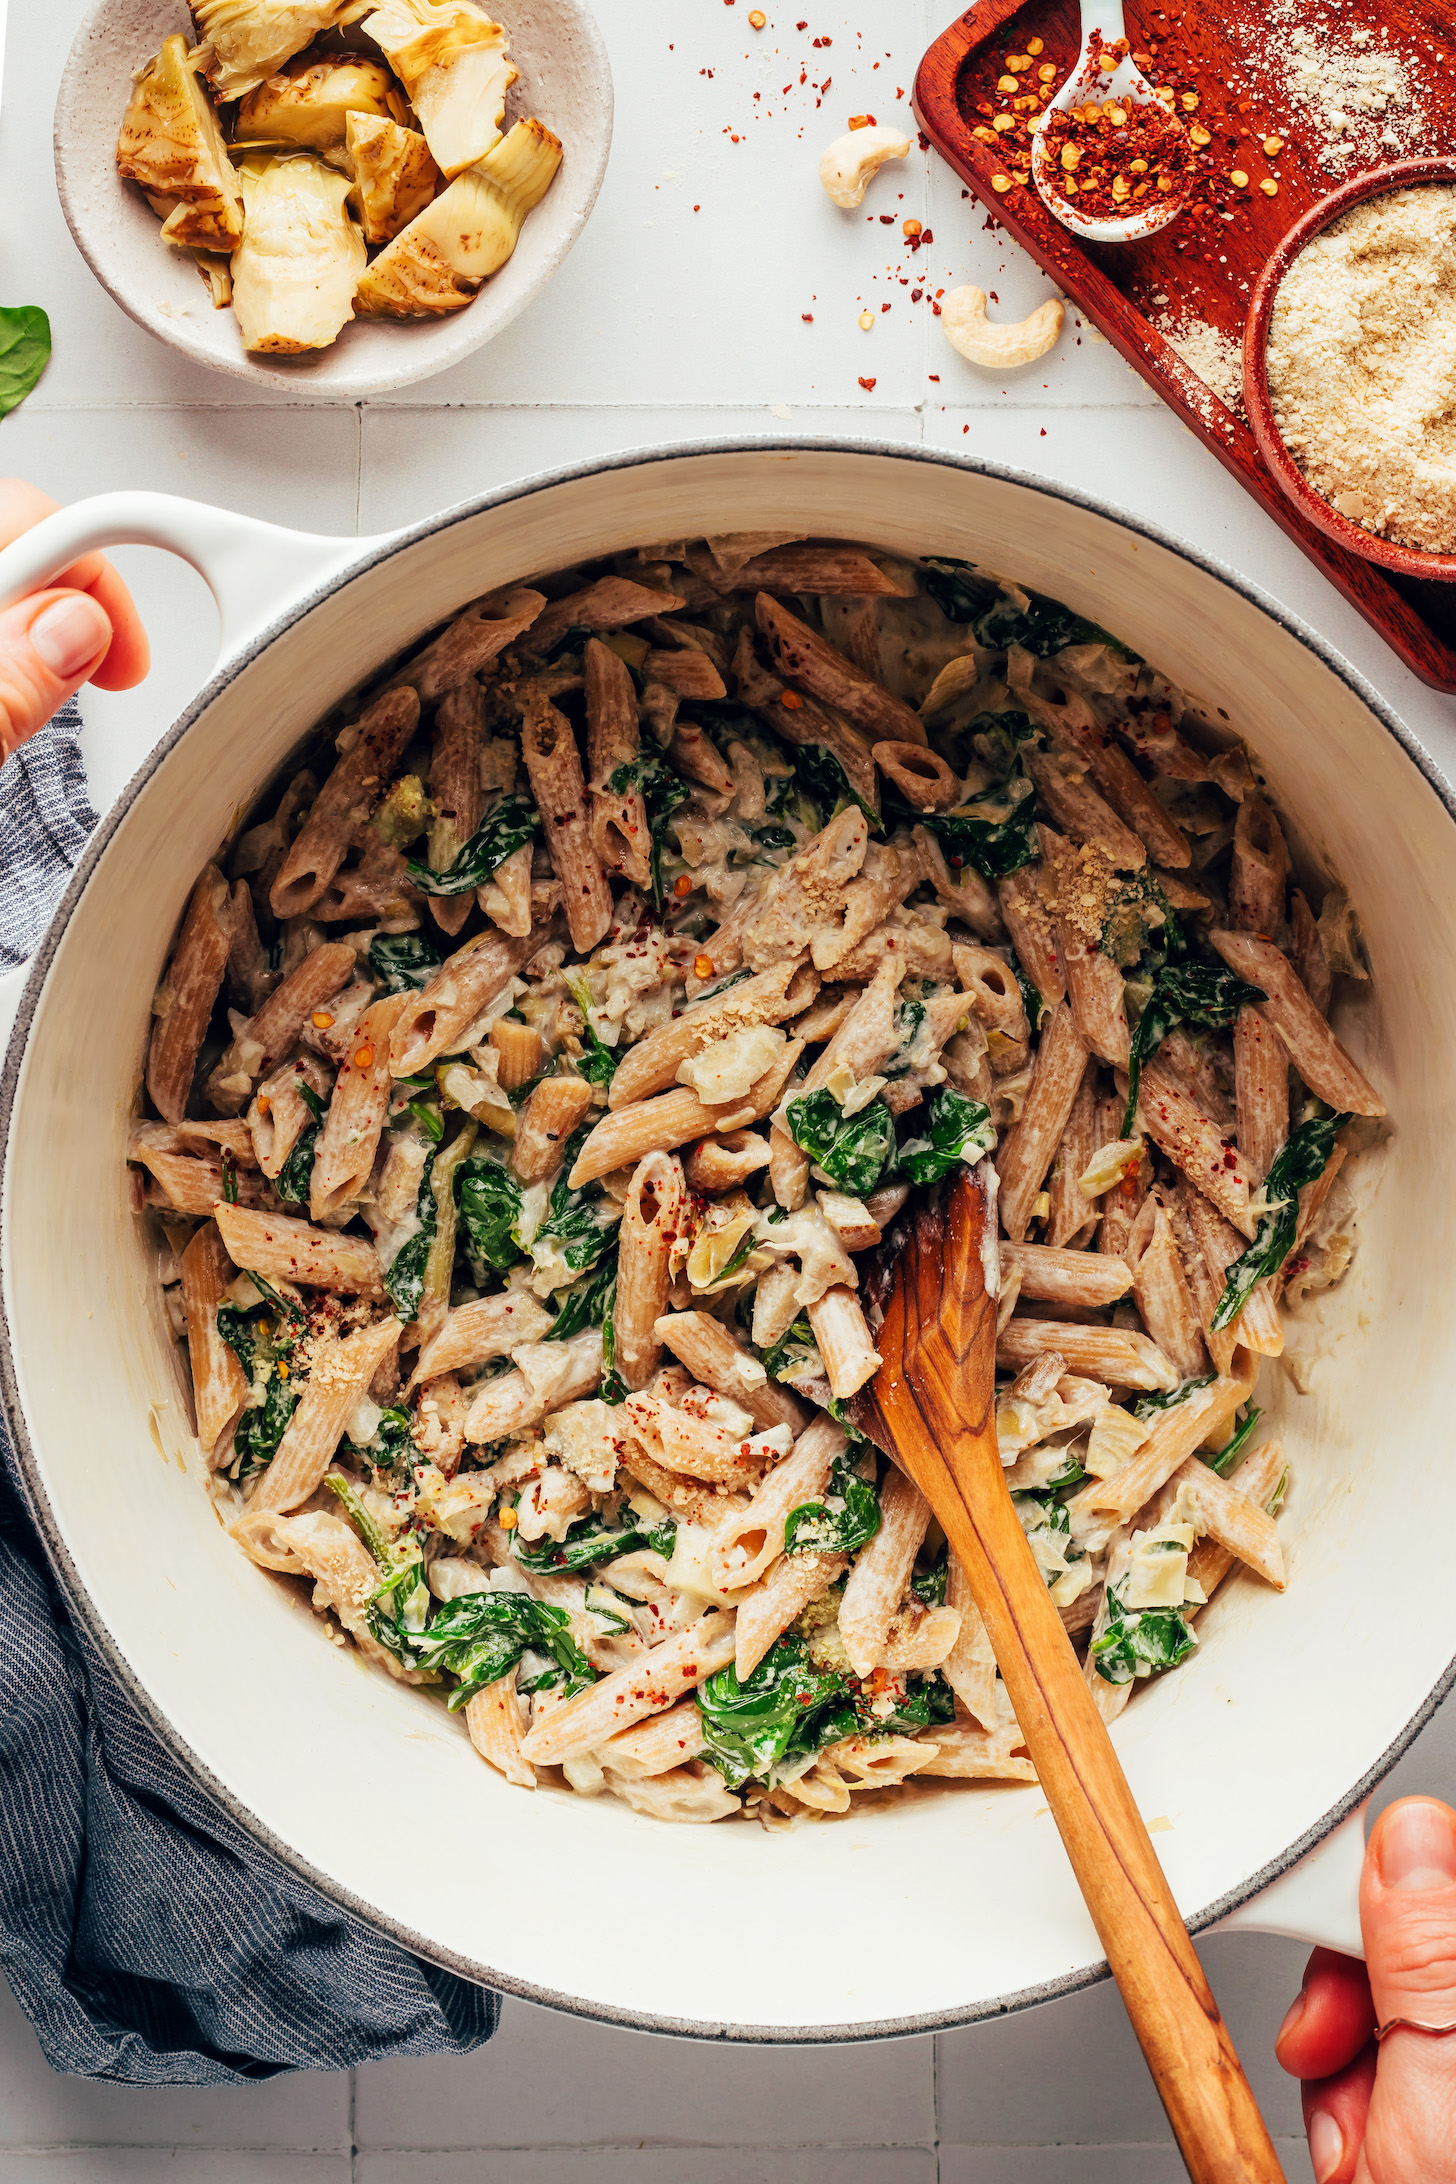 Pot of vegan spinach and artichoke dip pasta